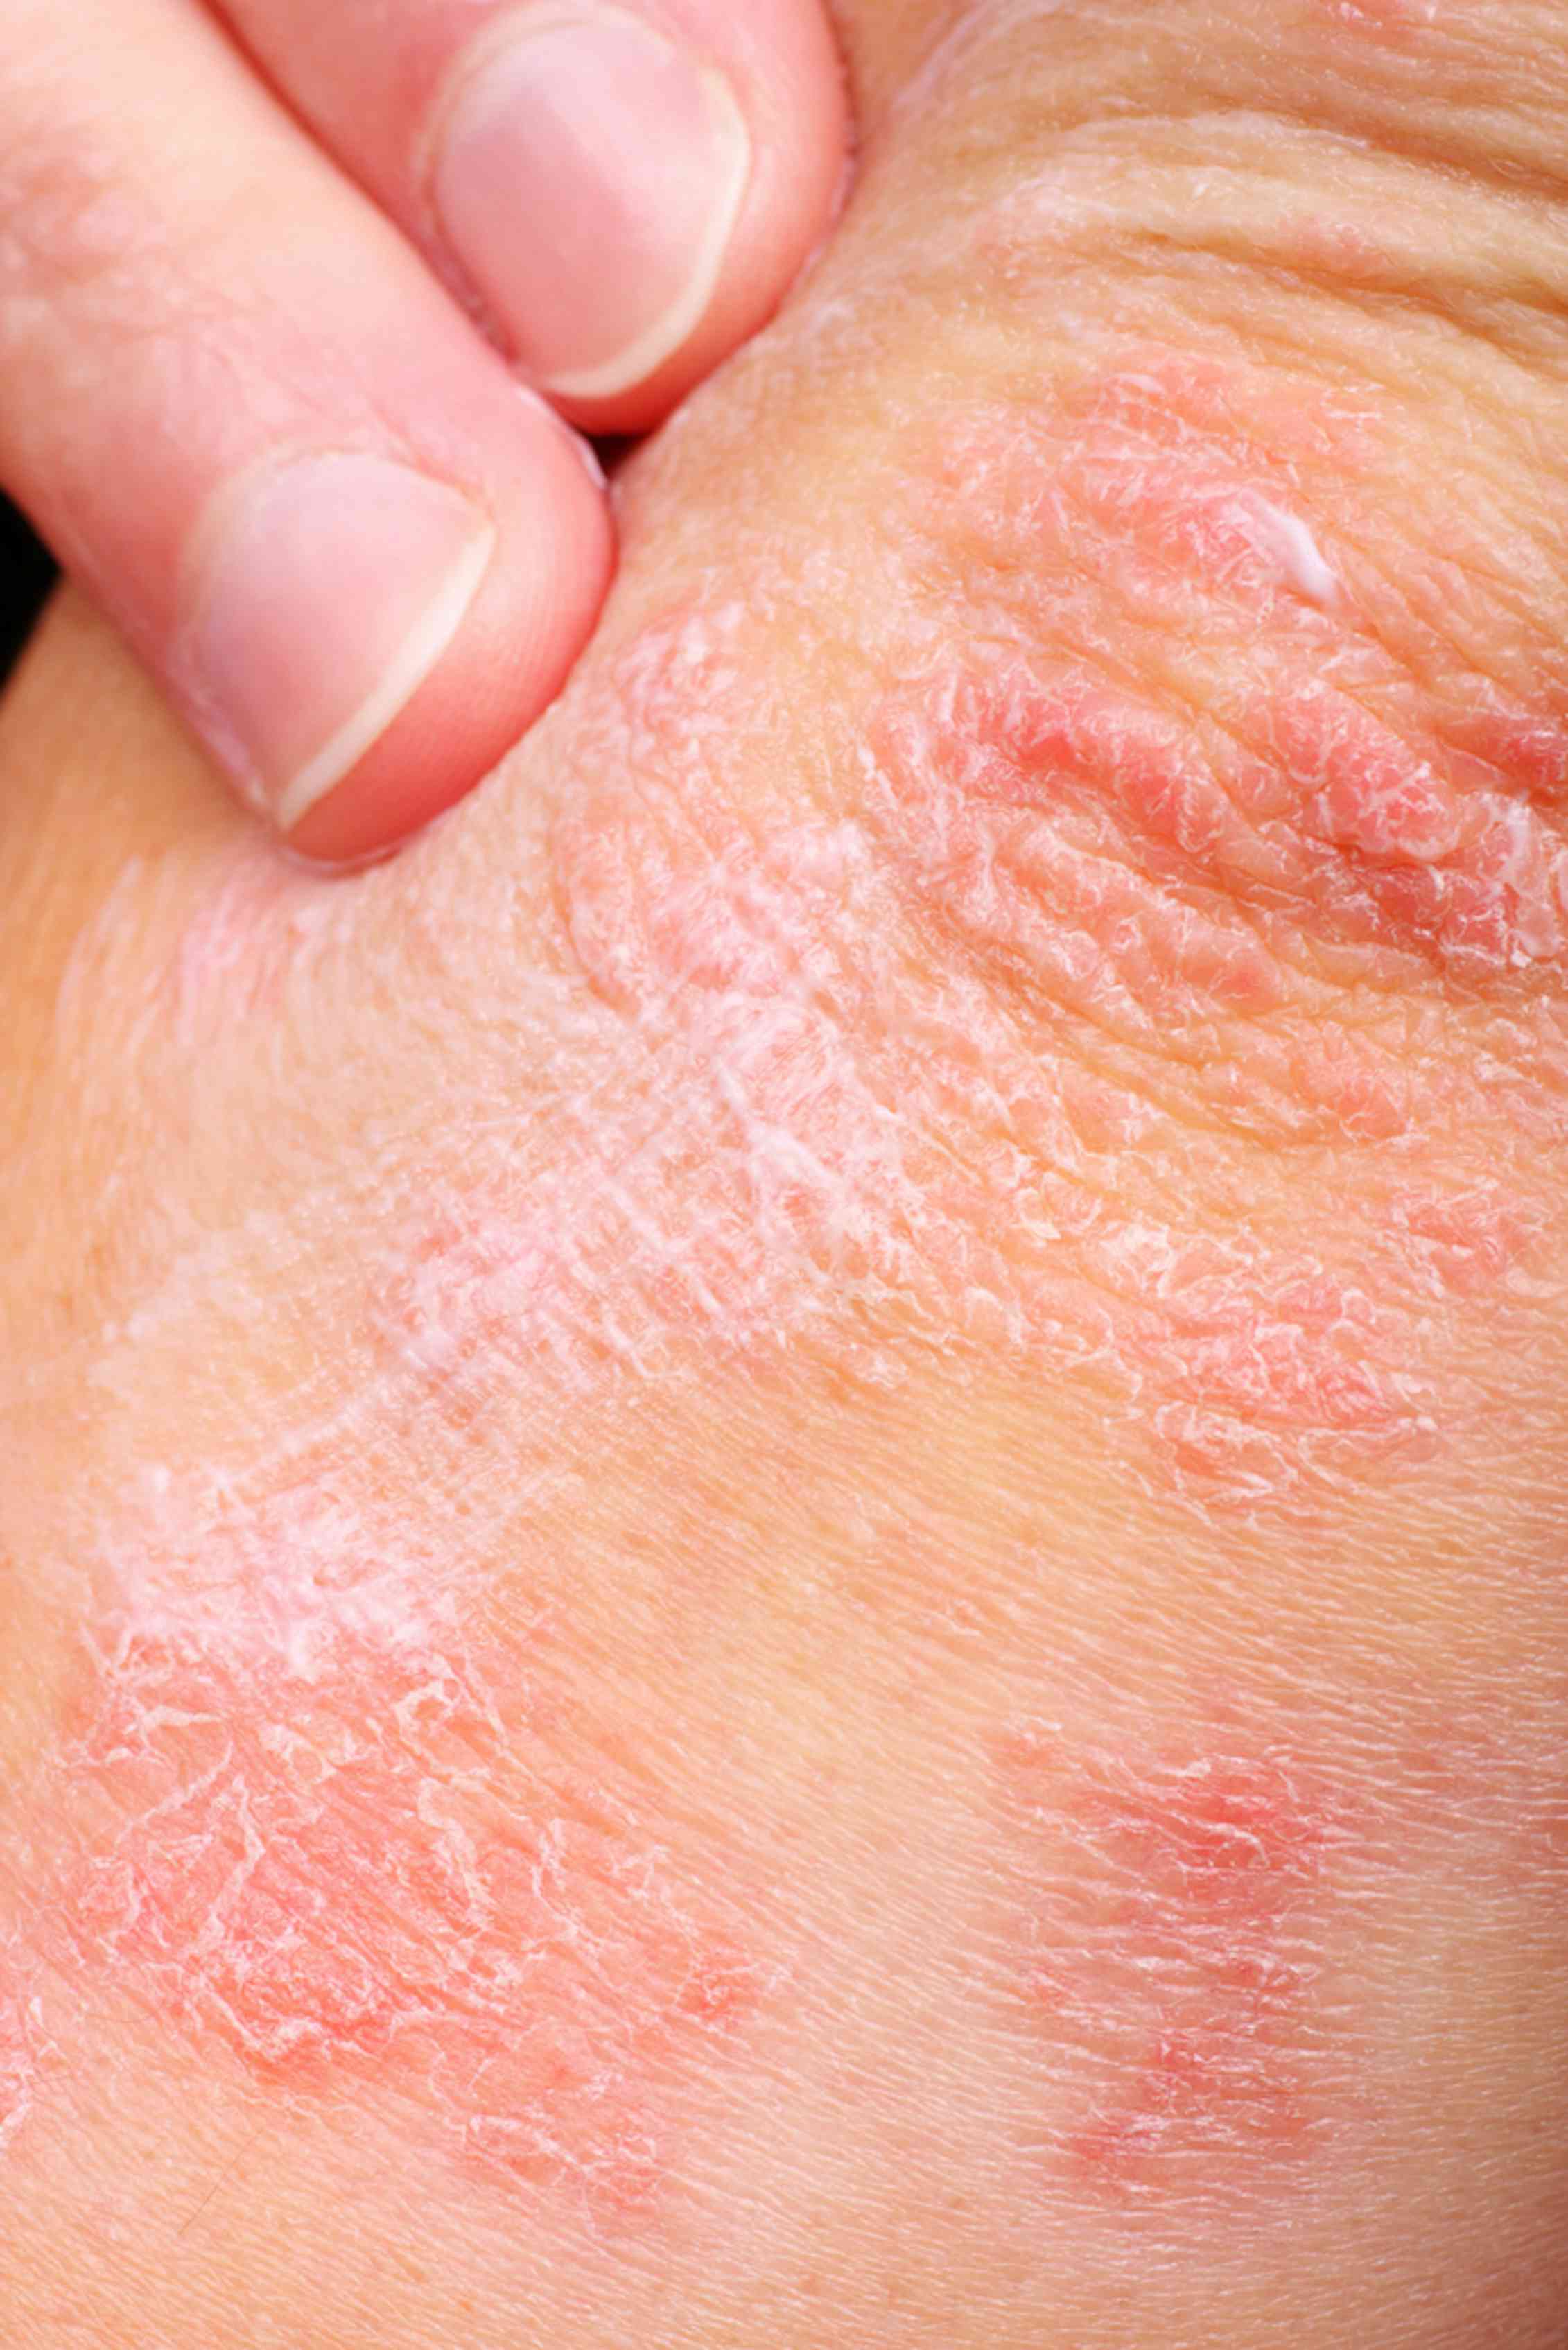 types of eczema